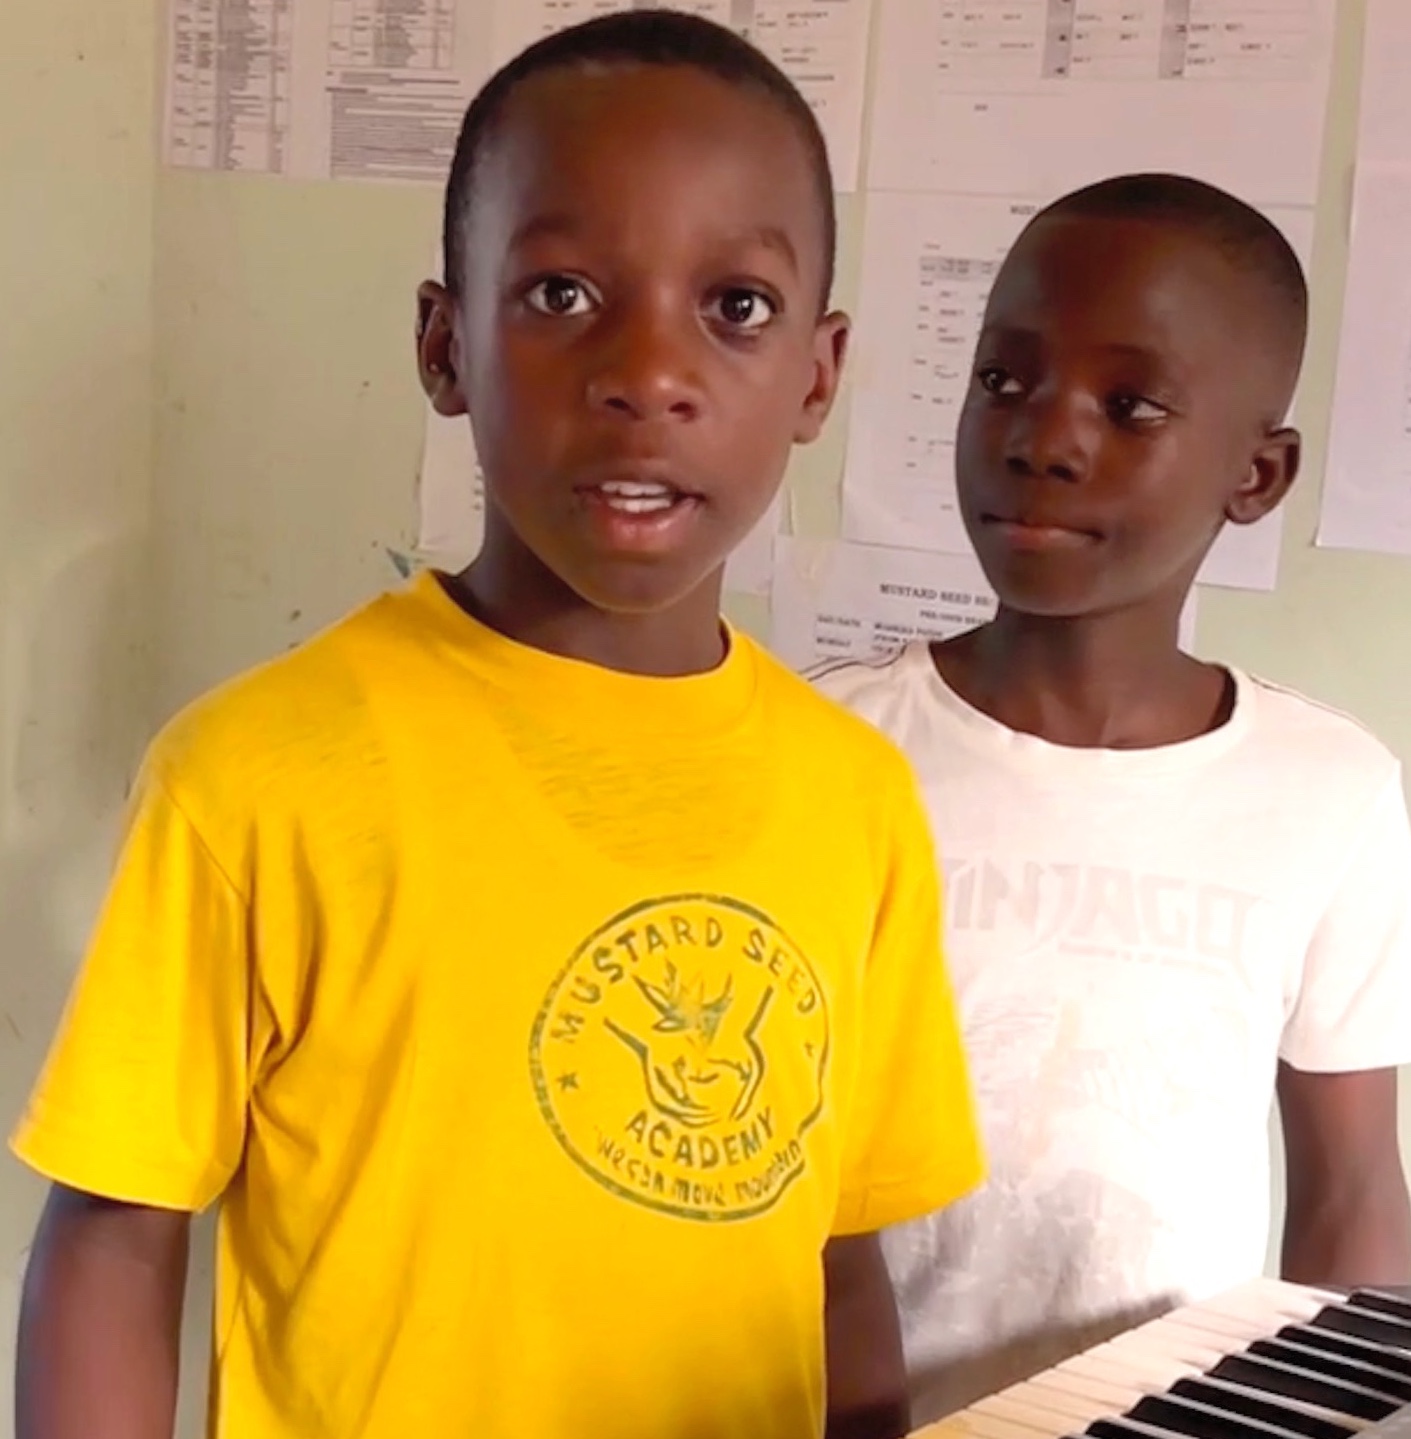 Two young Ugandan students with keyboard